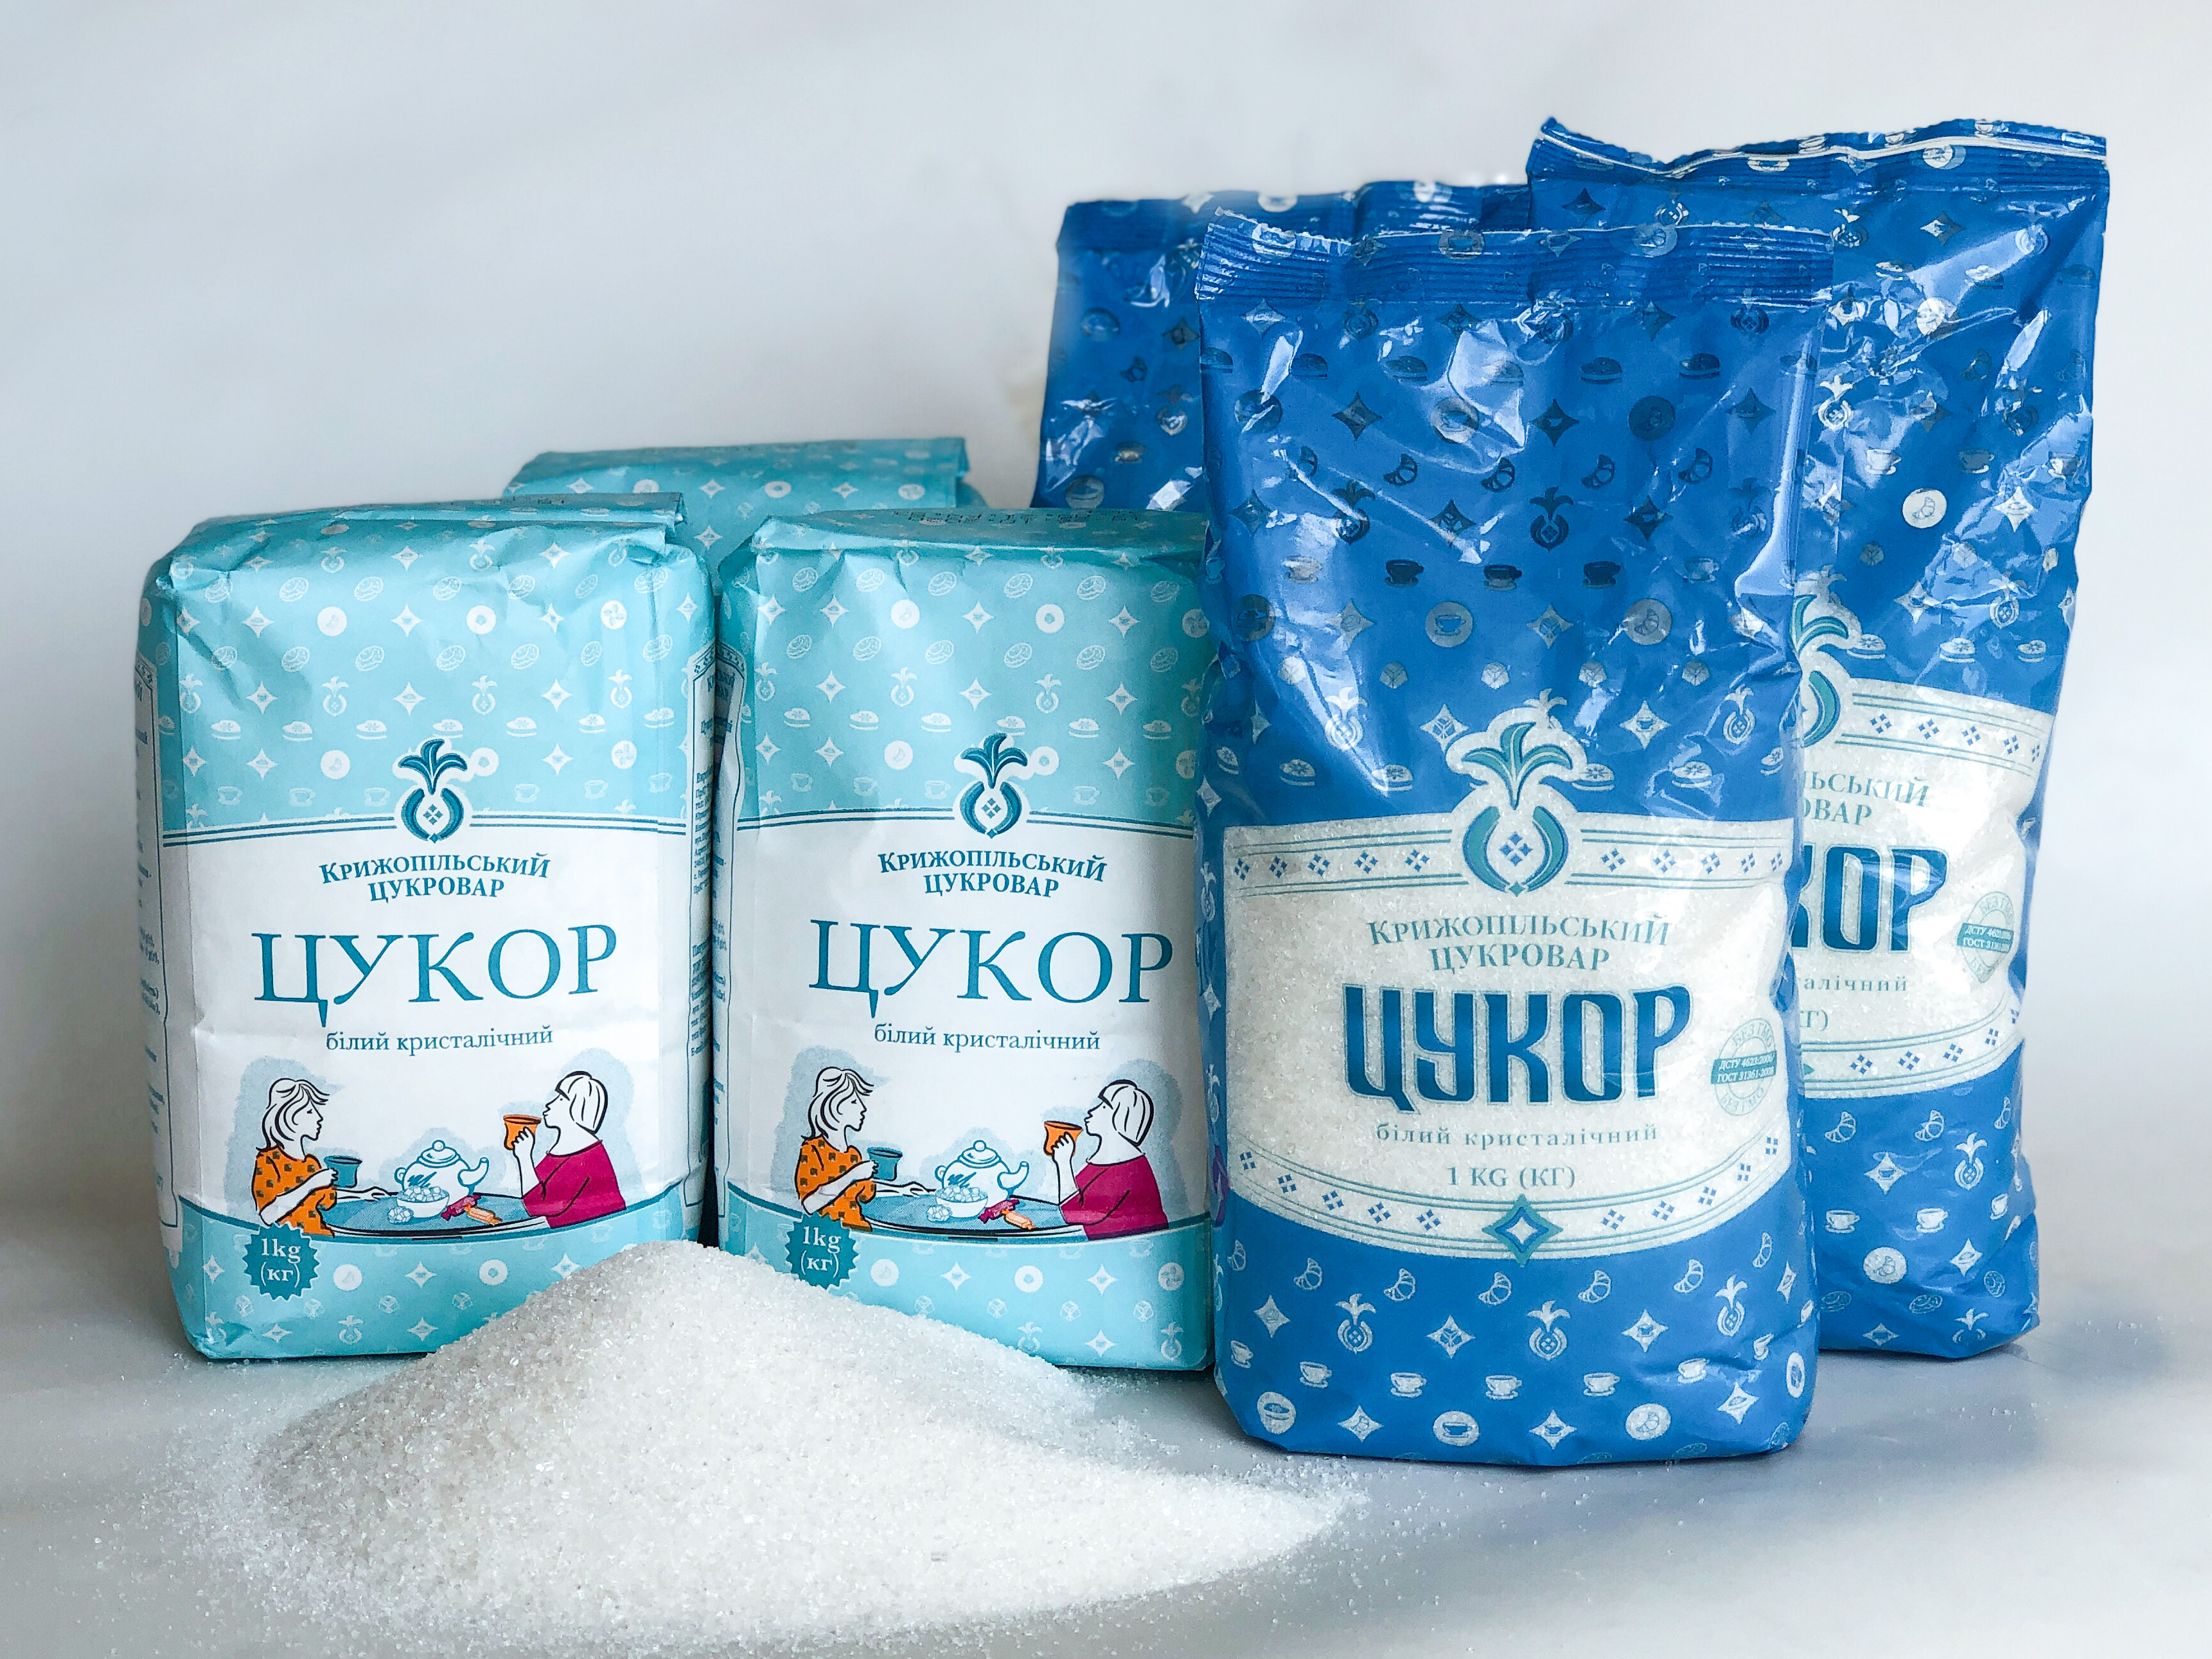 «УКРПРОМИНВЕСТ-АГРО» расширяет ассортимент сахарной продукции  